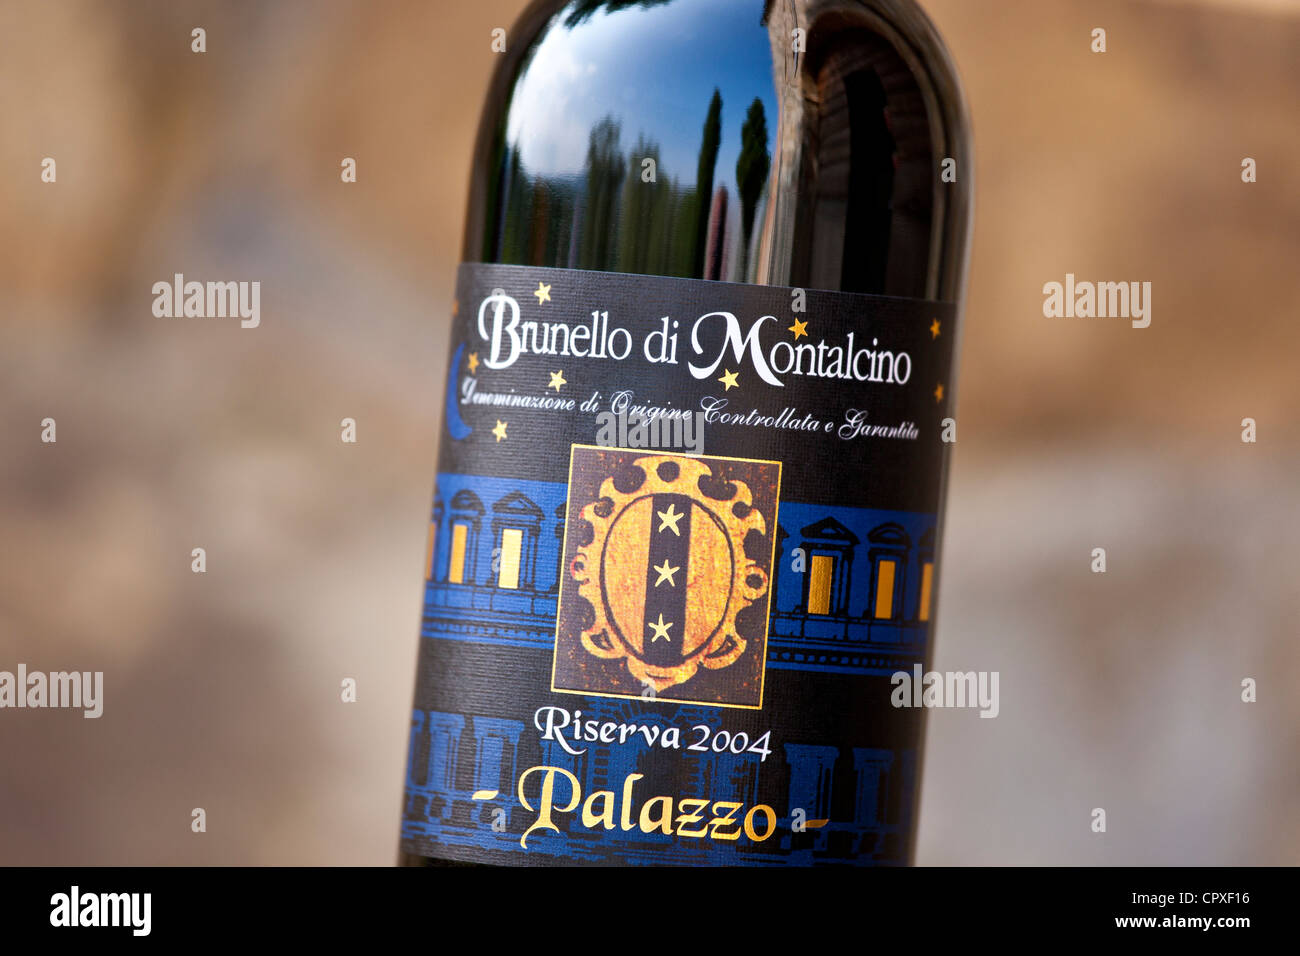 Il Brunello di Montalcino 2004 Riserva una bottiglia di vino rosso a tenuta vinicola del palazzo vicino a Montalcino in Val d'Orcia, Toscana, Italia Foto Stock